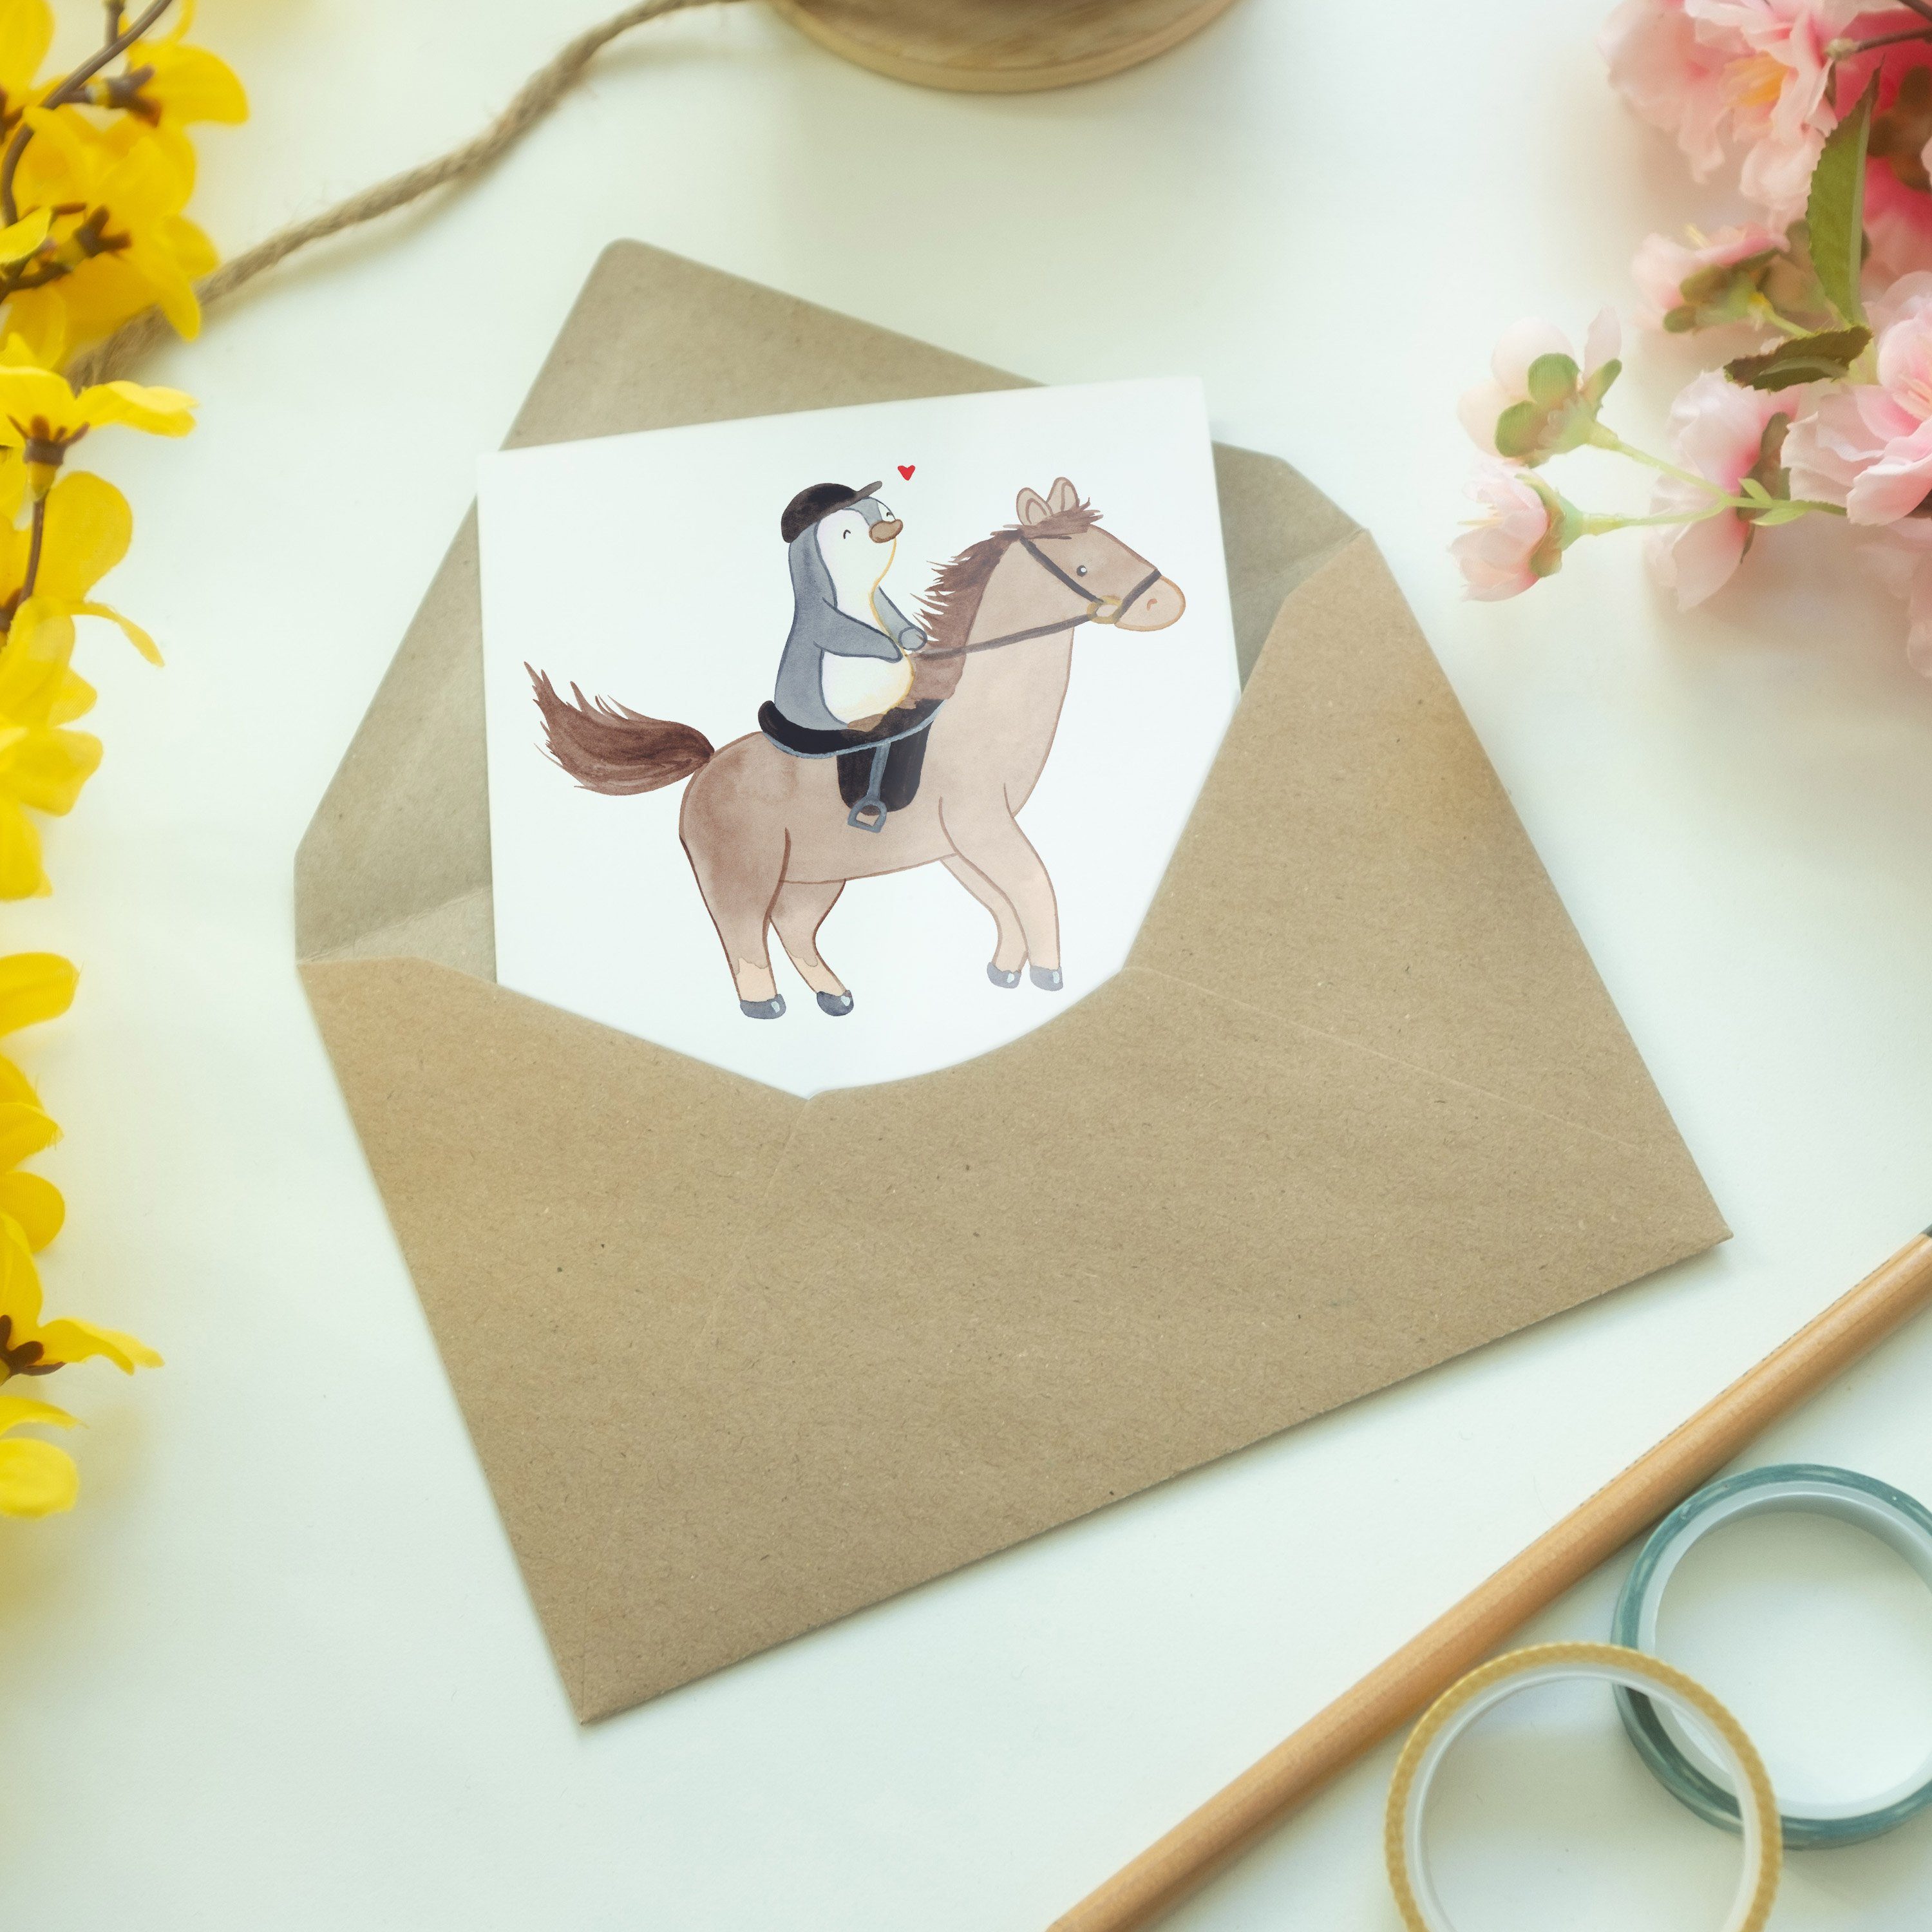 Mr. & Mrs. Medizin Pferd - - Reiten Weiß Grußkarte Hochzeitskarte, Geschenk, Therapeutisch Panda